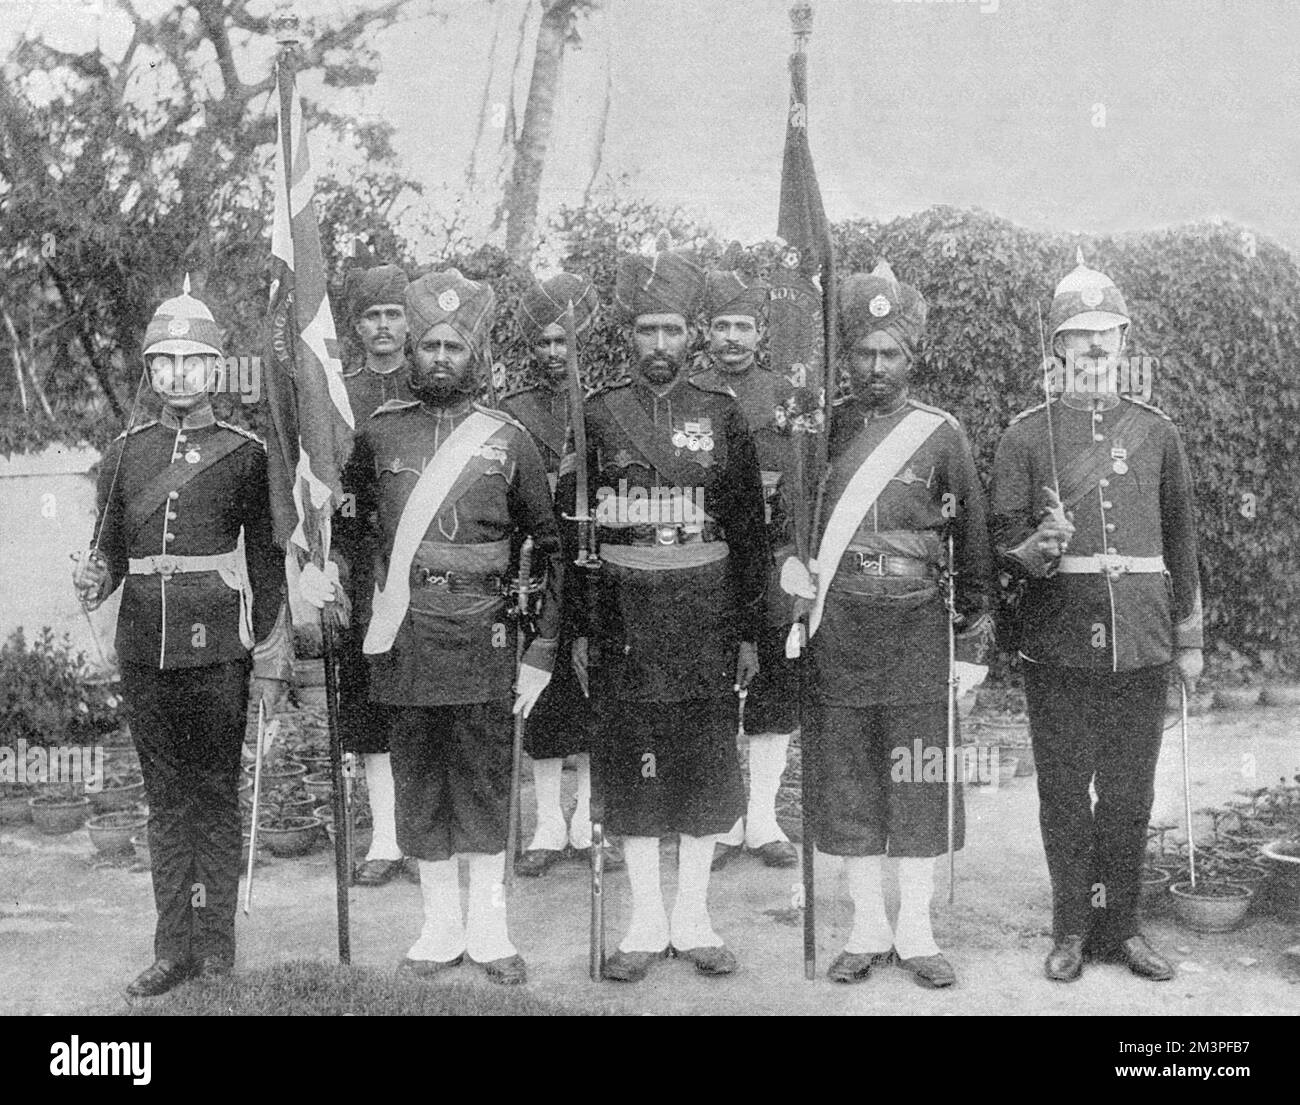 Les troupes indiennes en Chine - les premières couleurs du régiment de Hong Kong, présenté en 1895 par Sir William Robinson. Le régiment est sous le commandement du lieutenant-colonel Retalick de l'infanterie sikh de 45th. Date: 1900 Banque D'Images